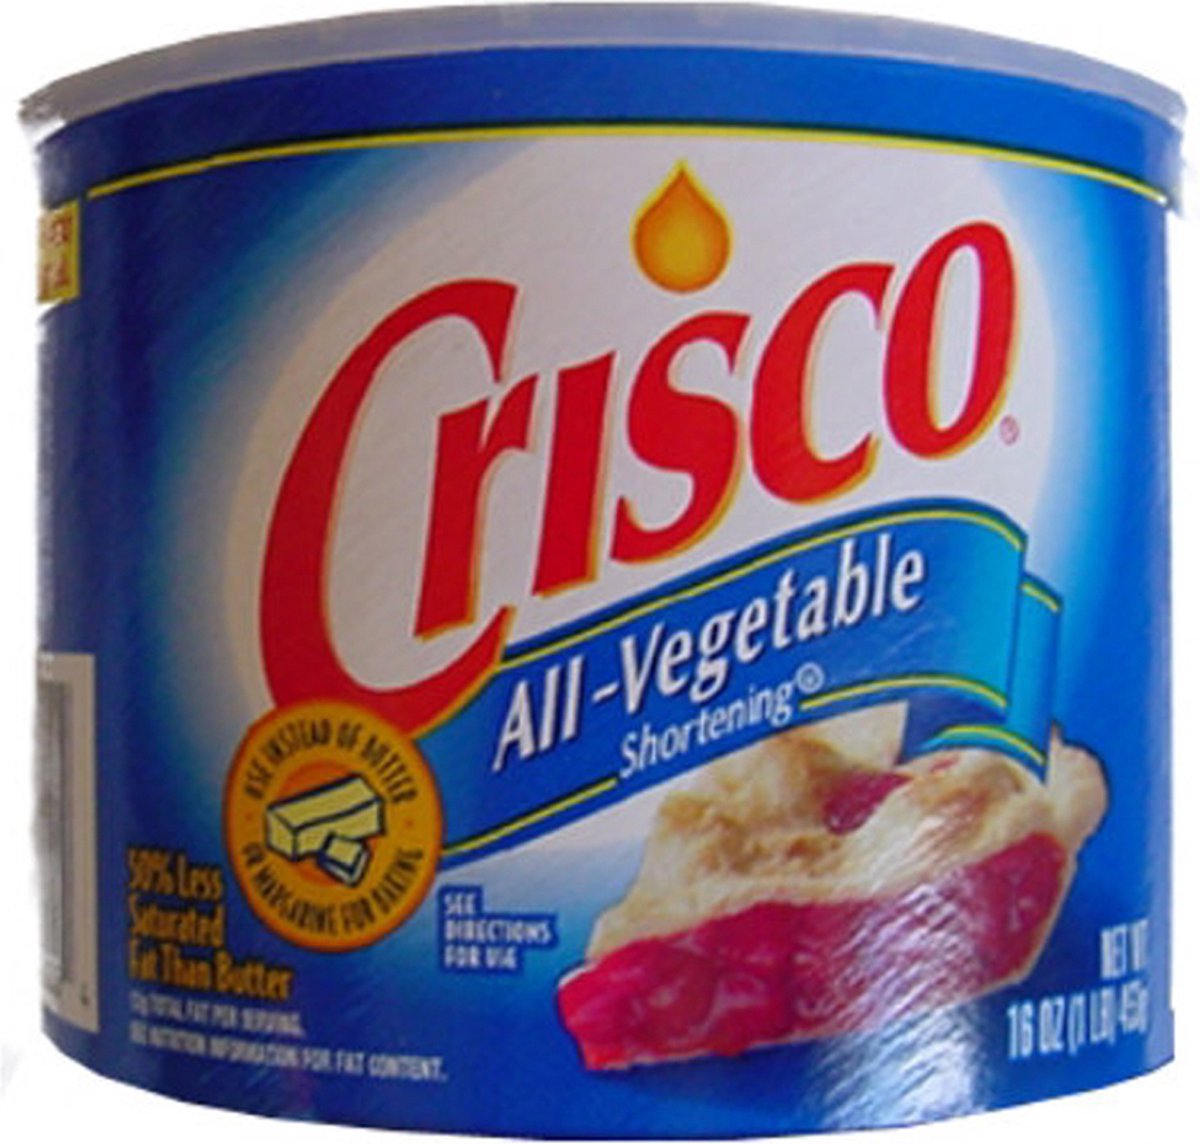 Crisco - Shortening tout végétal à saveur de beurre (graisse végétale) -  12x 453g